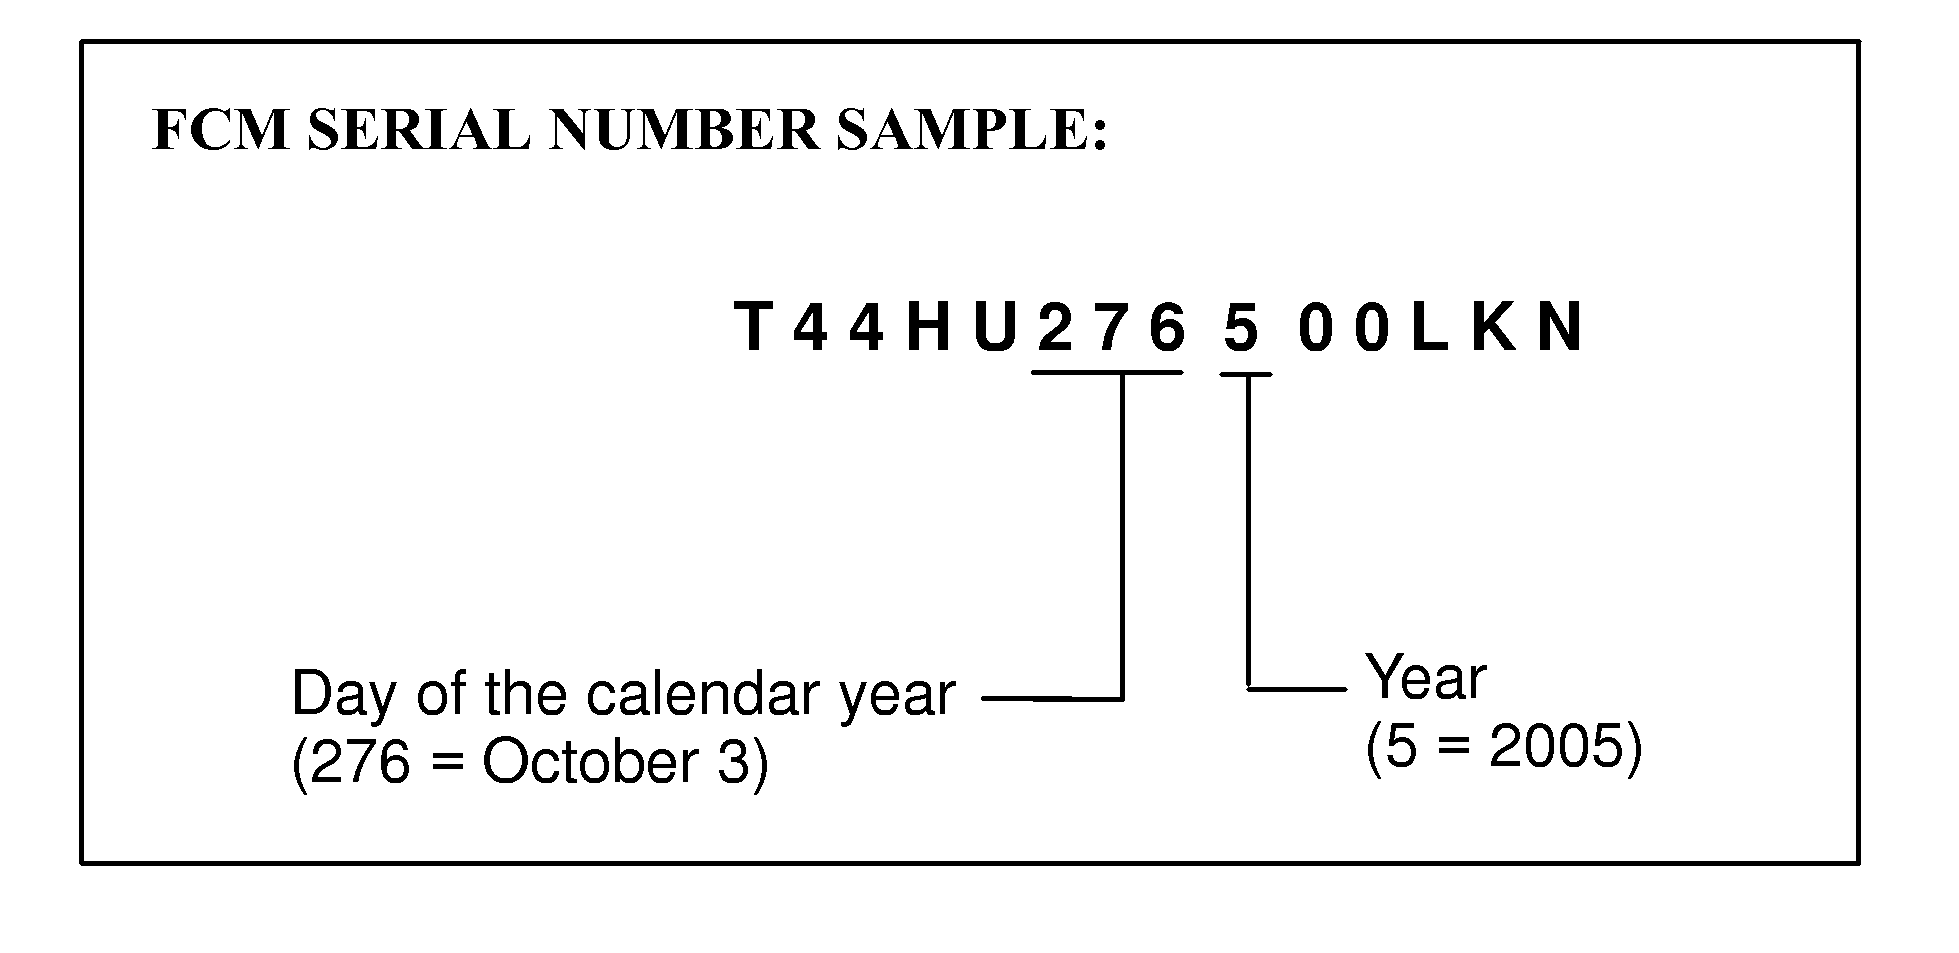 FCM serial number